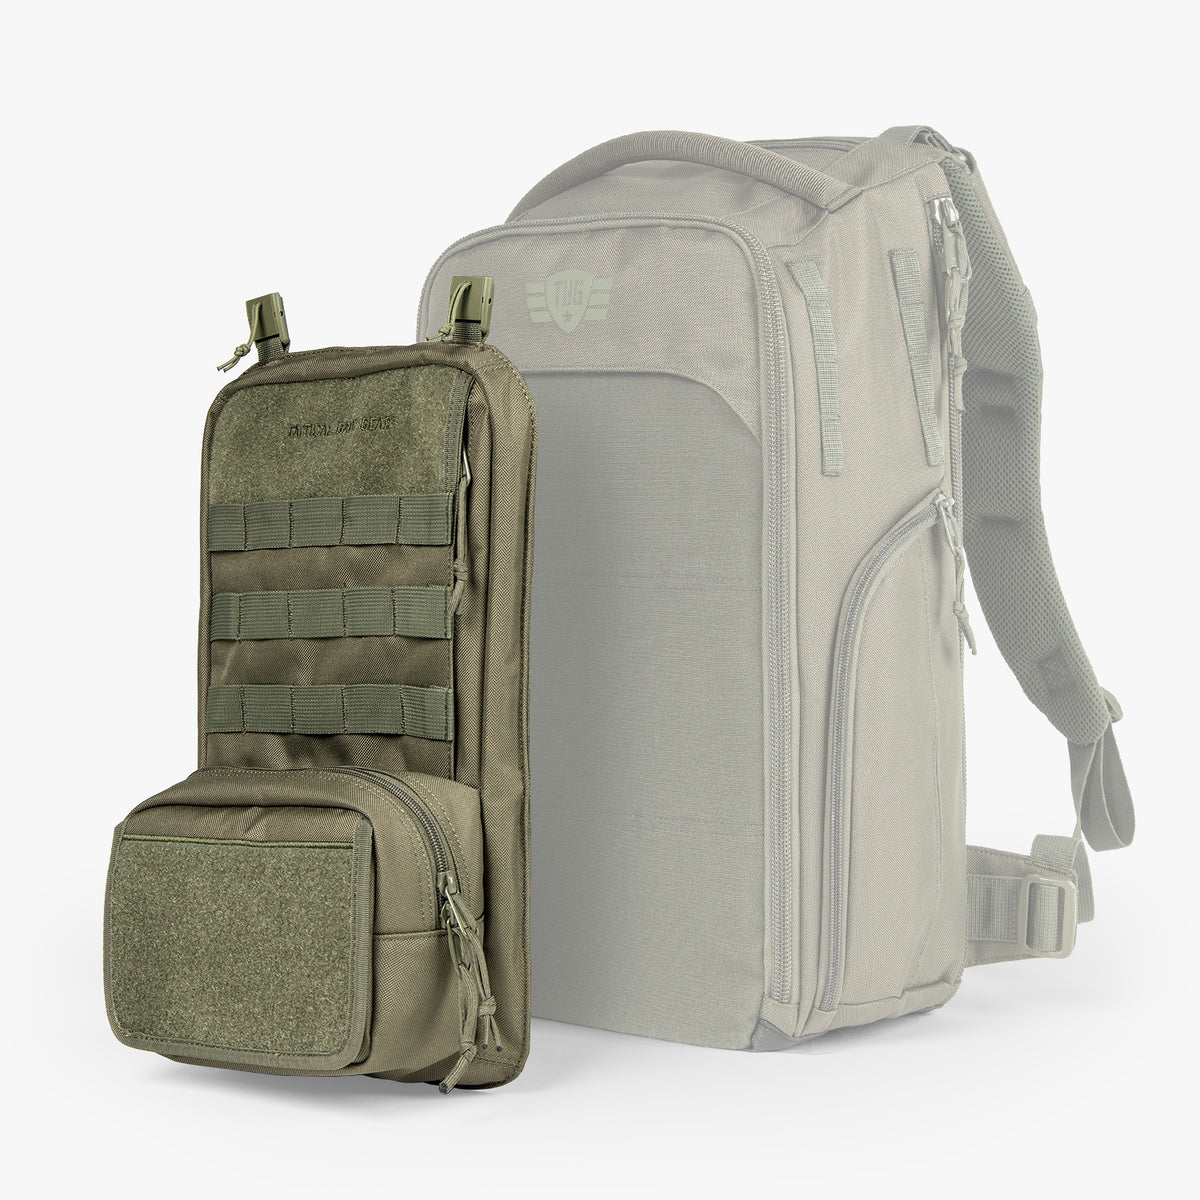 MOD Backpack Panel 003, MOD Diaper Bag Backpack